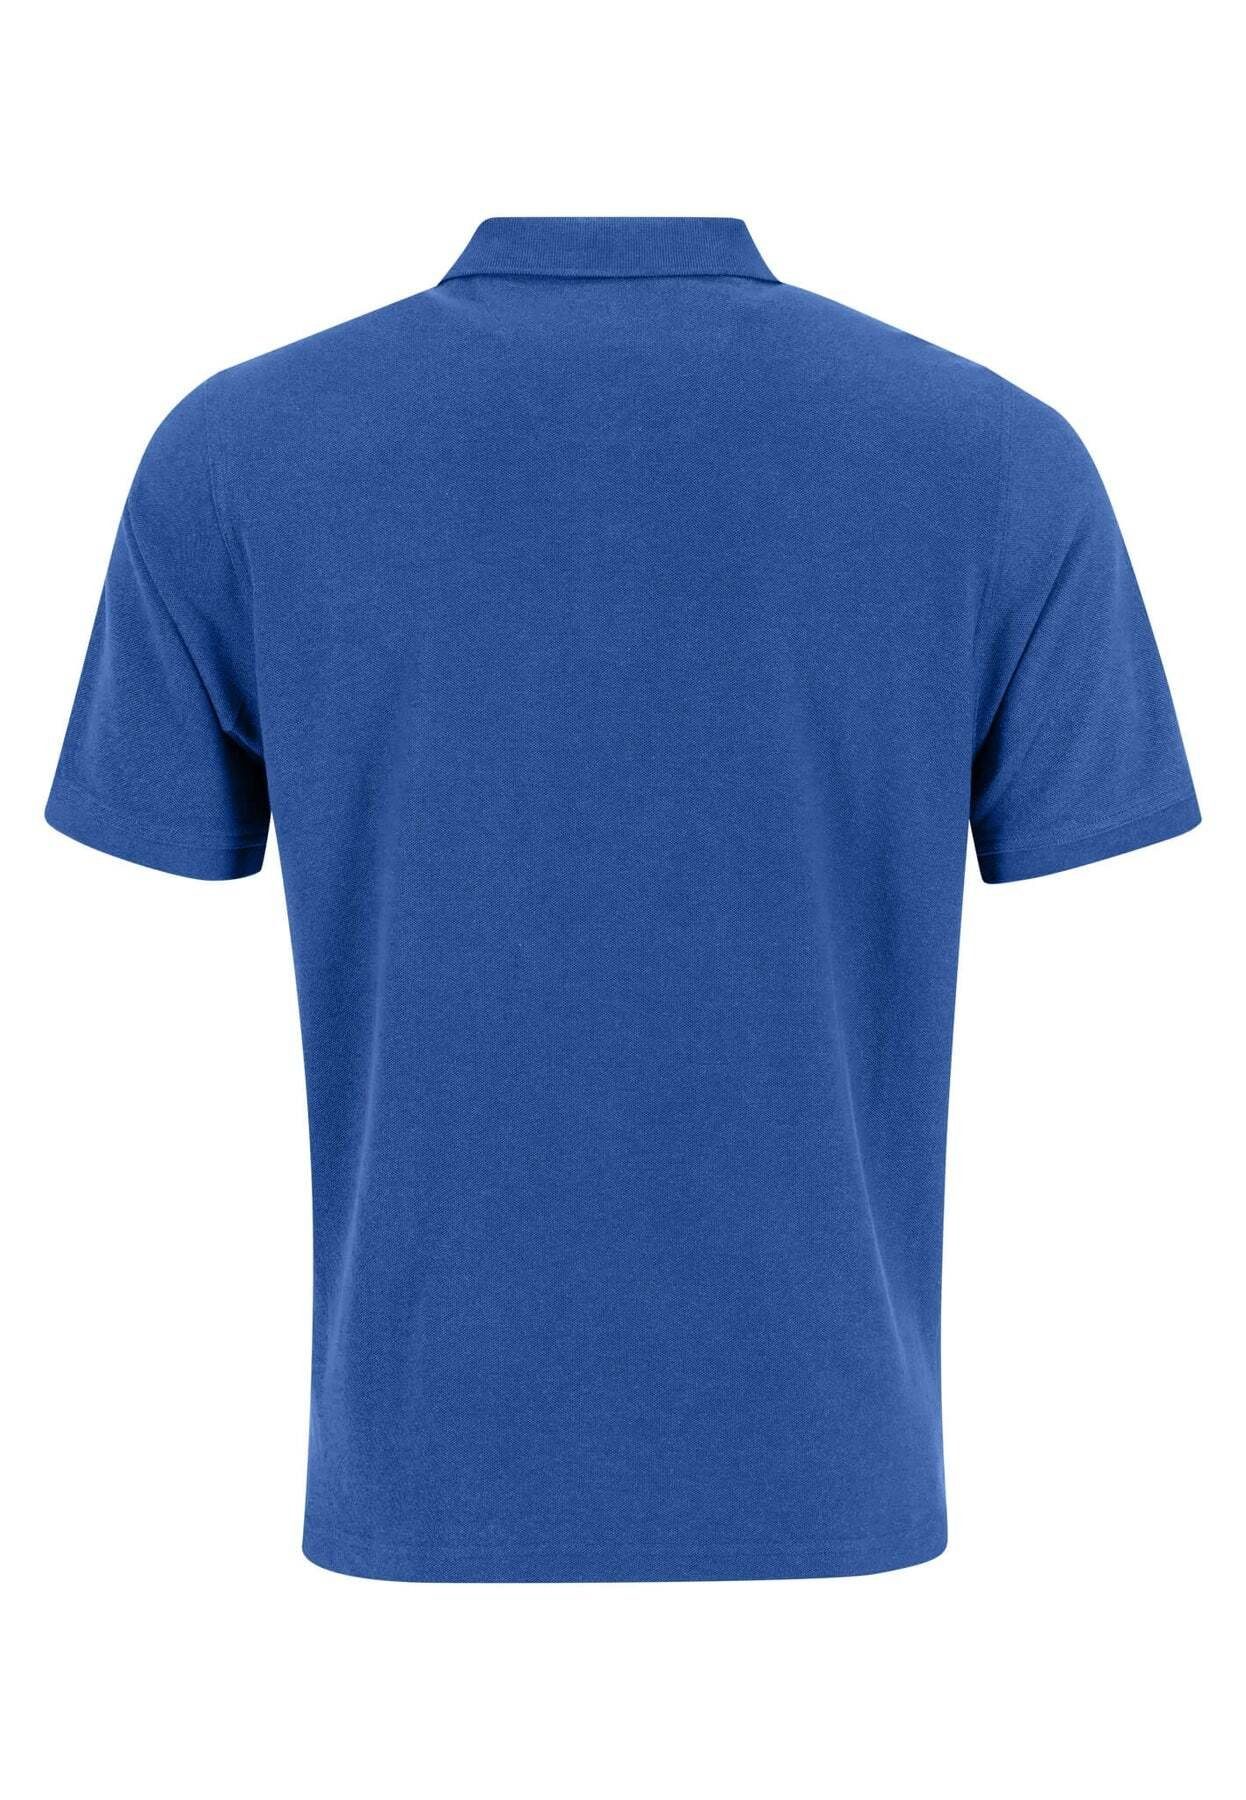 FYNCH-HATTON Poloshirt Poloshirt Kurzarmshirt mit dunkelblau Polokragen